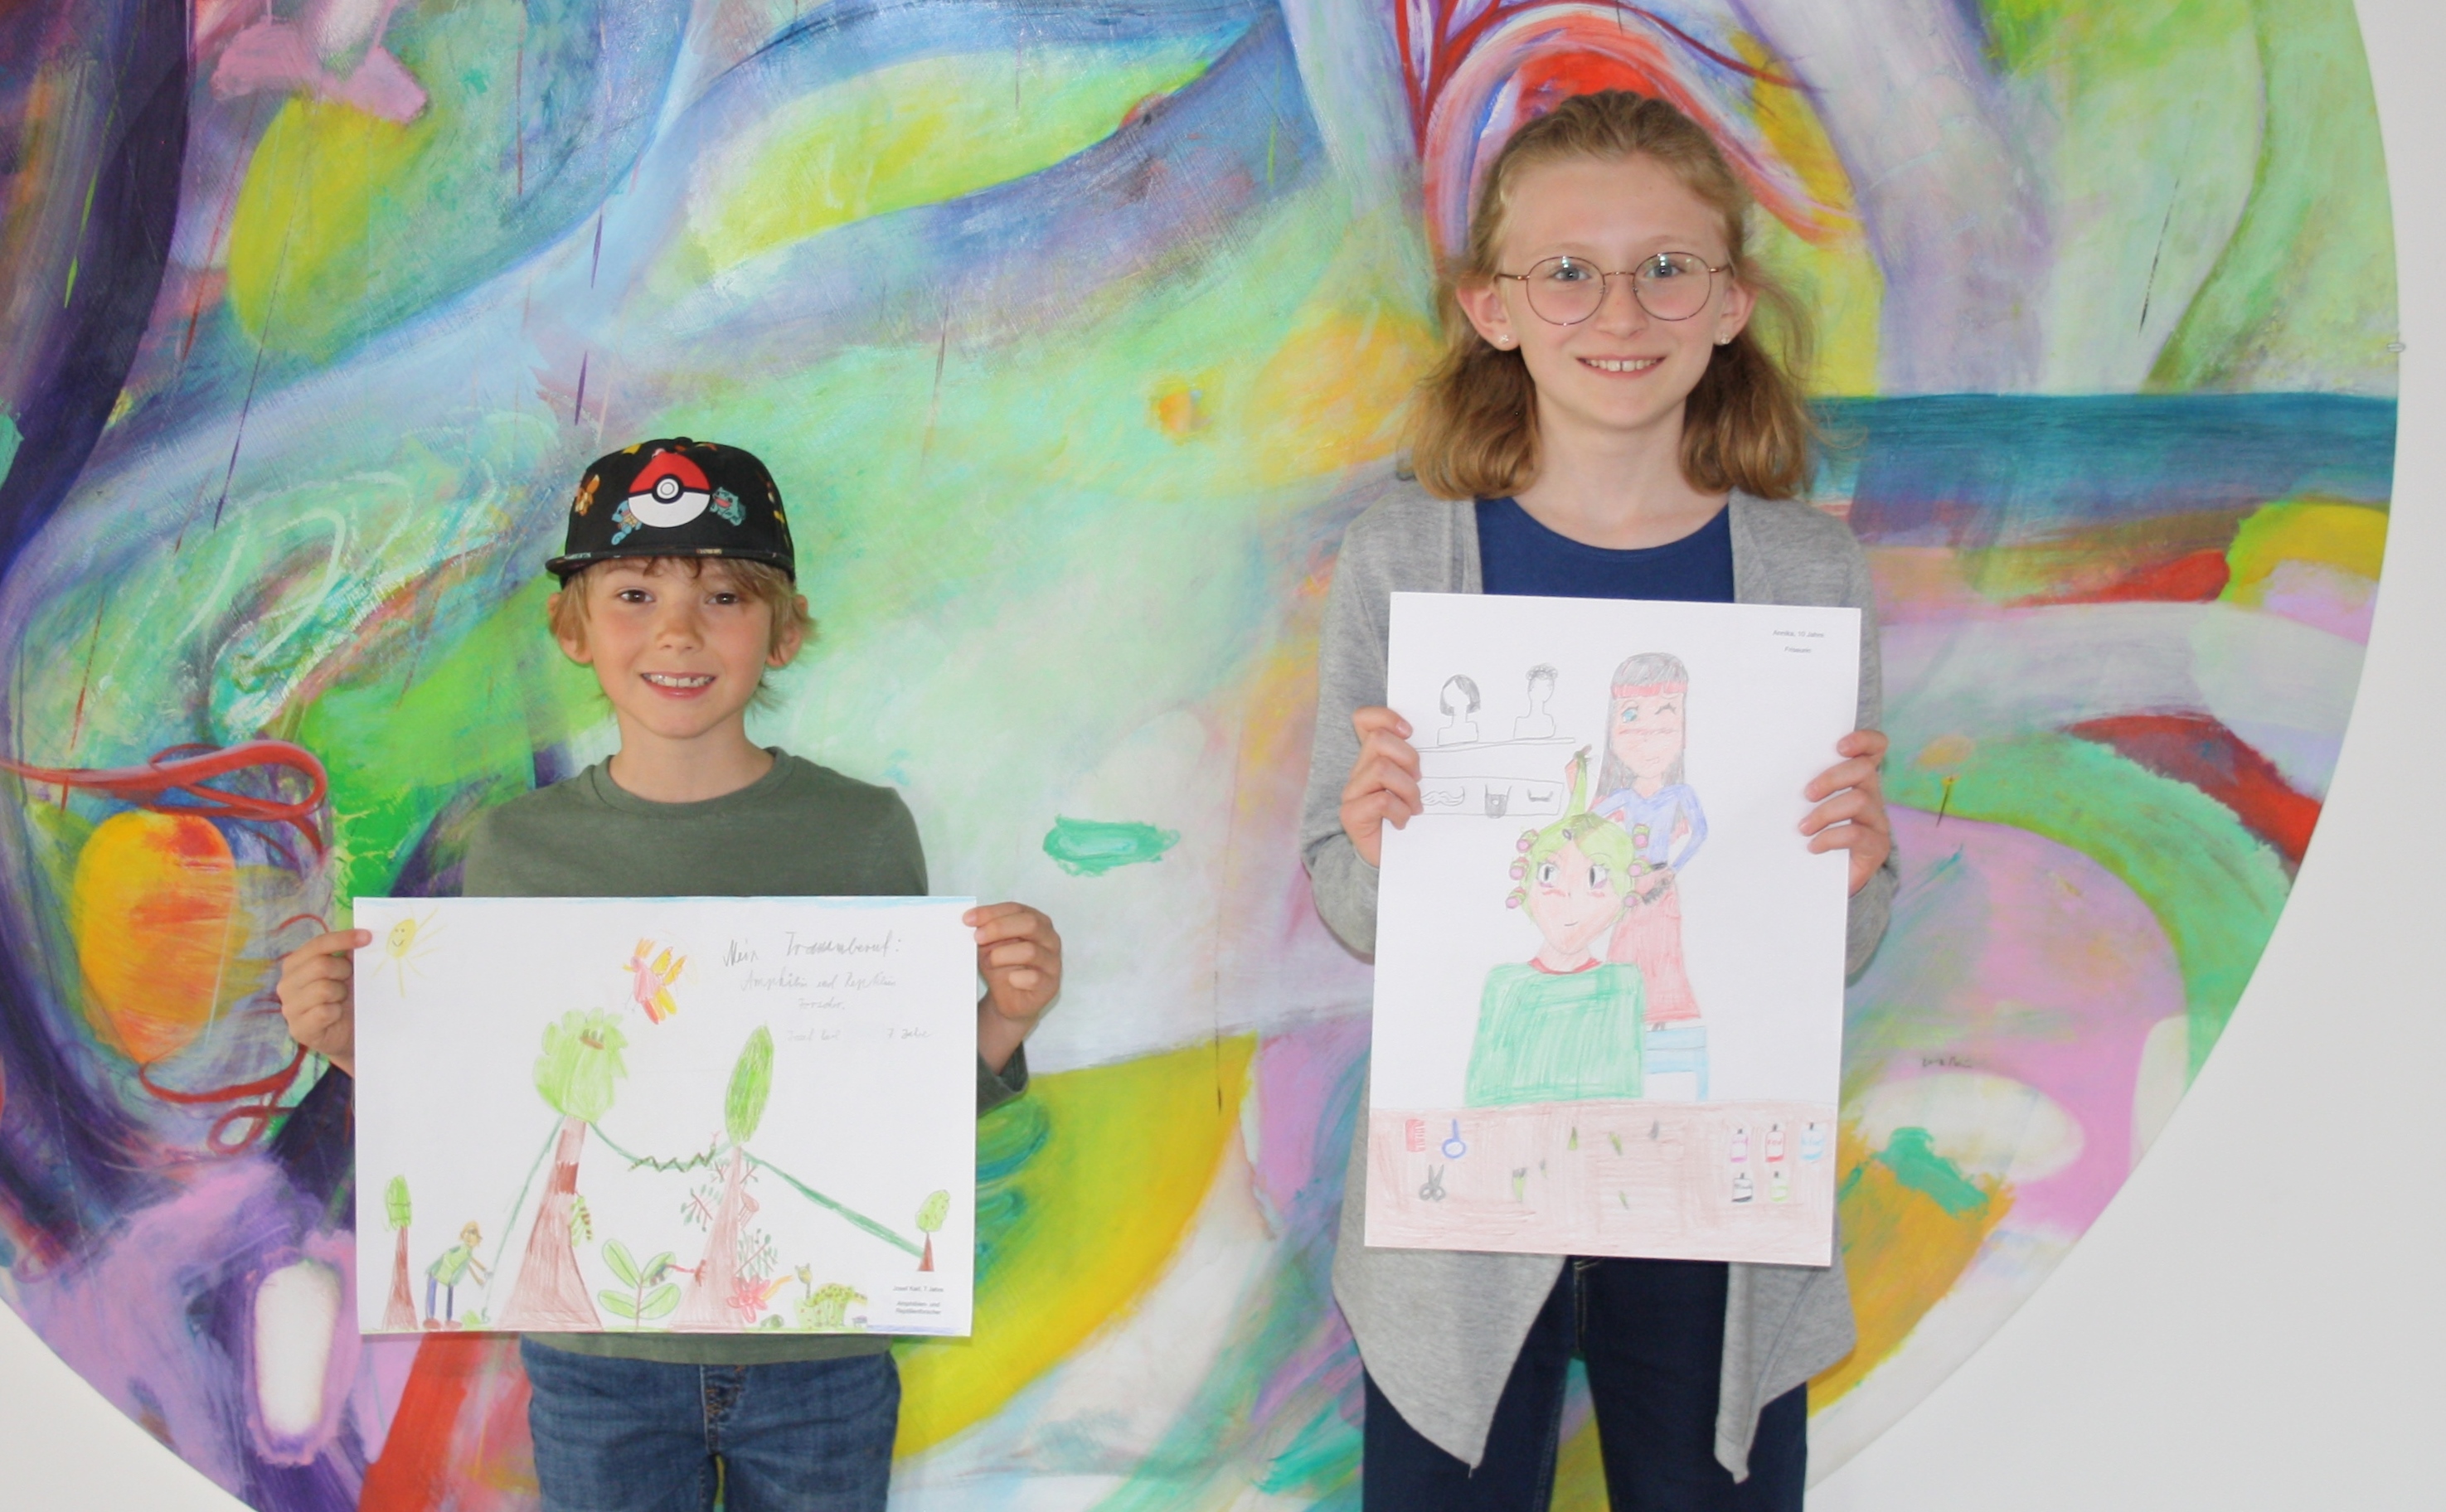 Sieger des Malwettbewerbs gekürt: Kinder zeichnen ihren Traumberuf